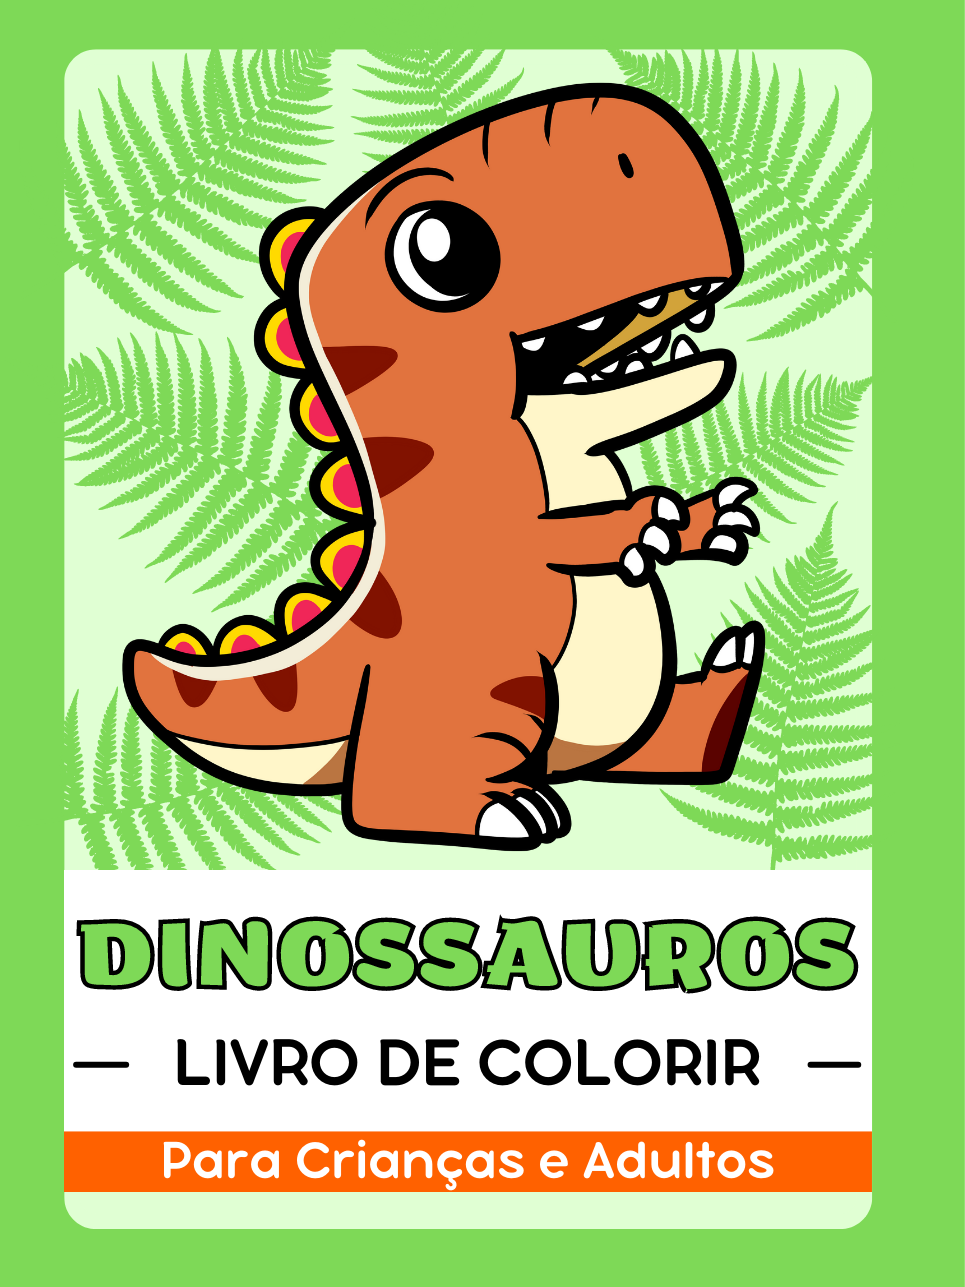 Dinossauros Livro de Colorir para Crianças e Adultos